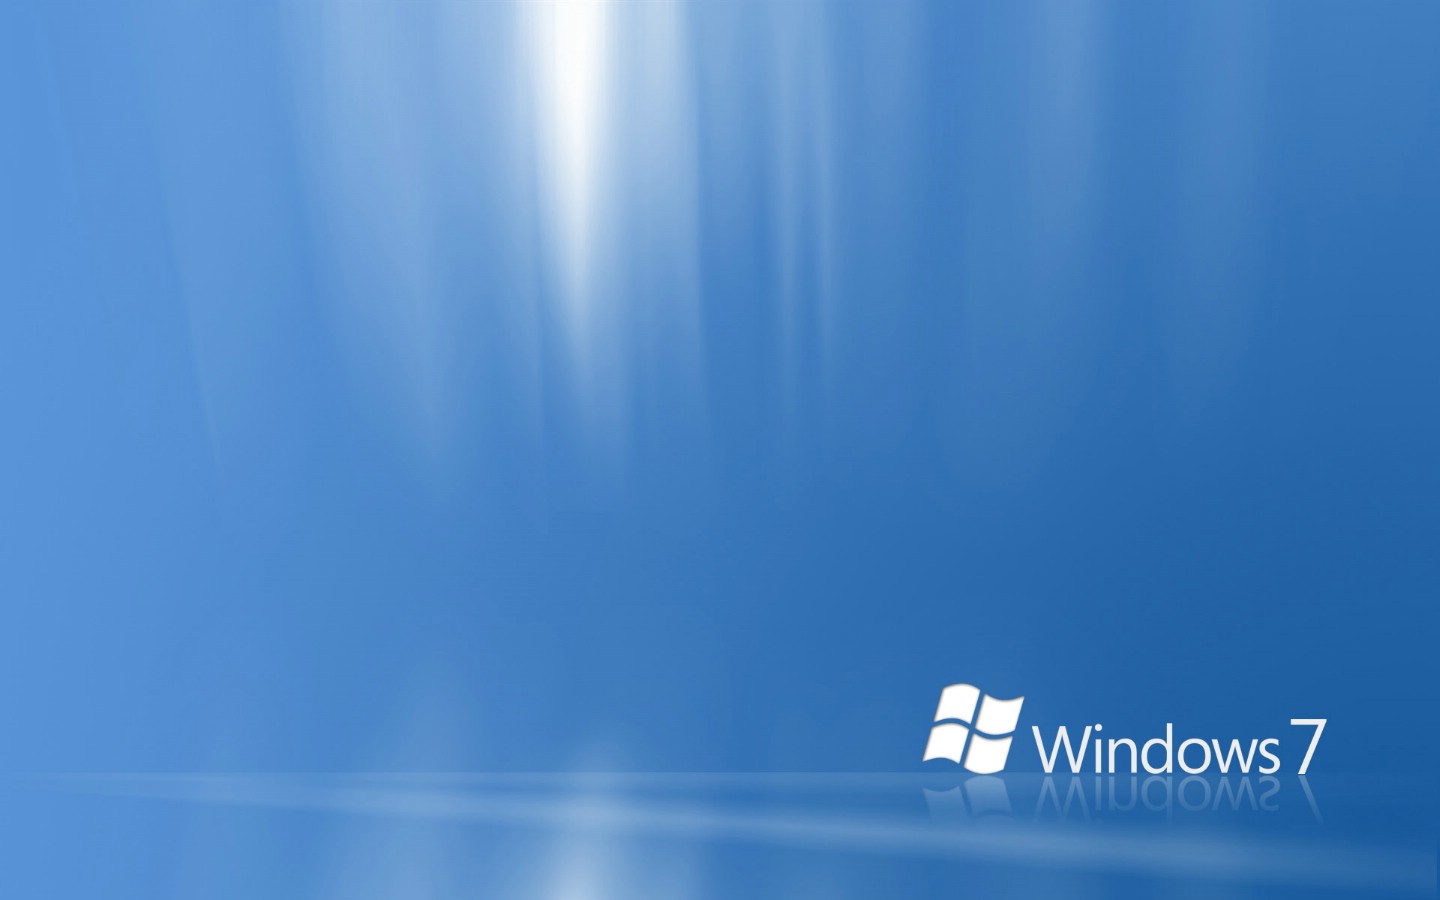 壁纸1440x900Windows7 5 4壁纸 Windows7壁纸 Windows7图片 Windows7素材 系统壁纸 系统图库 系统图片素材桌面壁纸